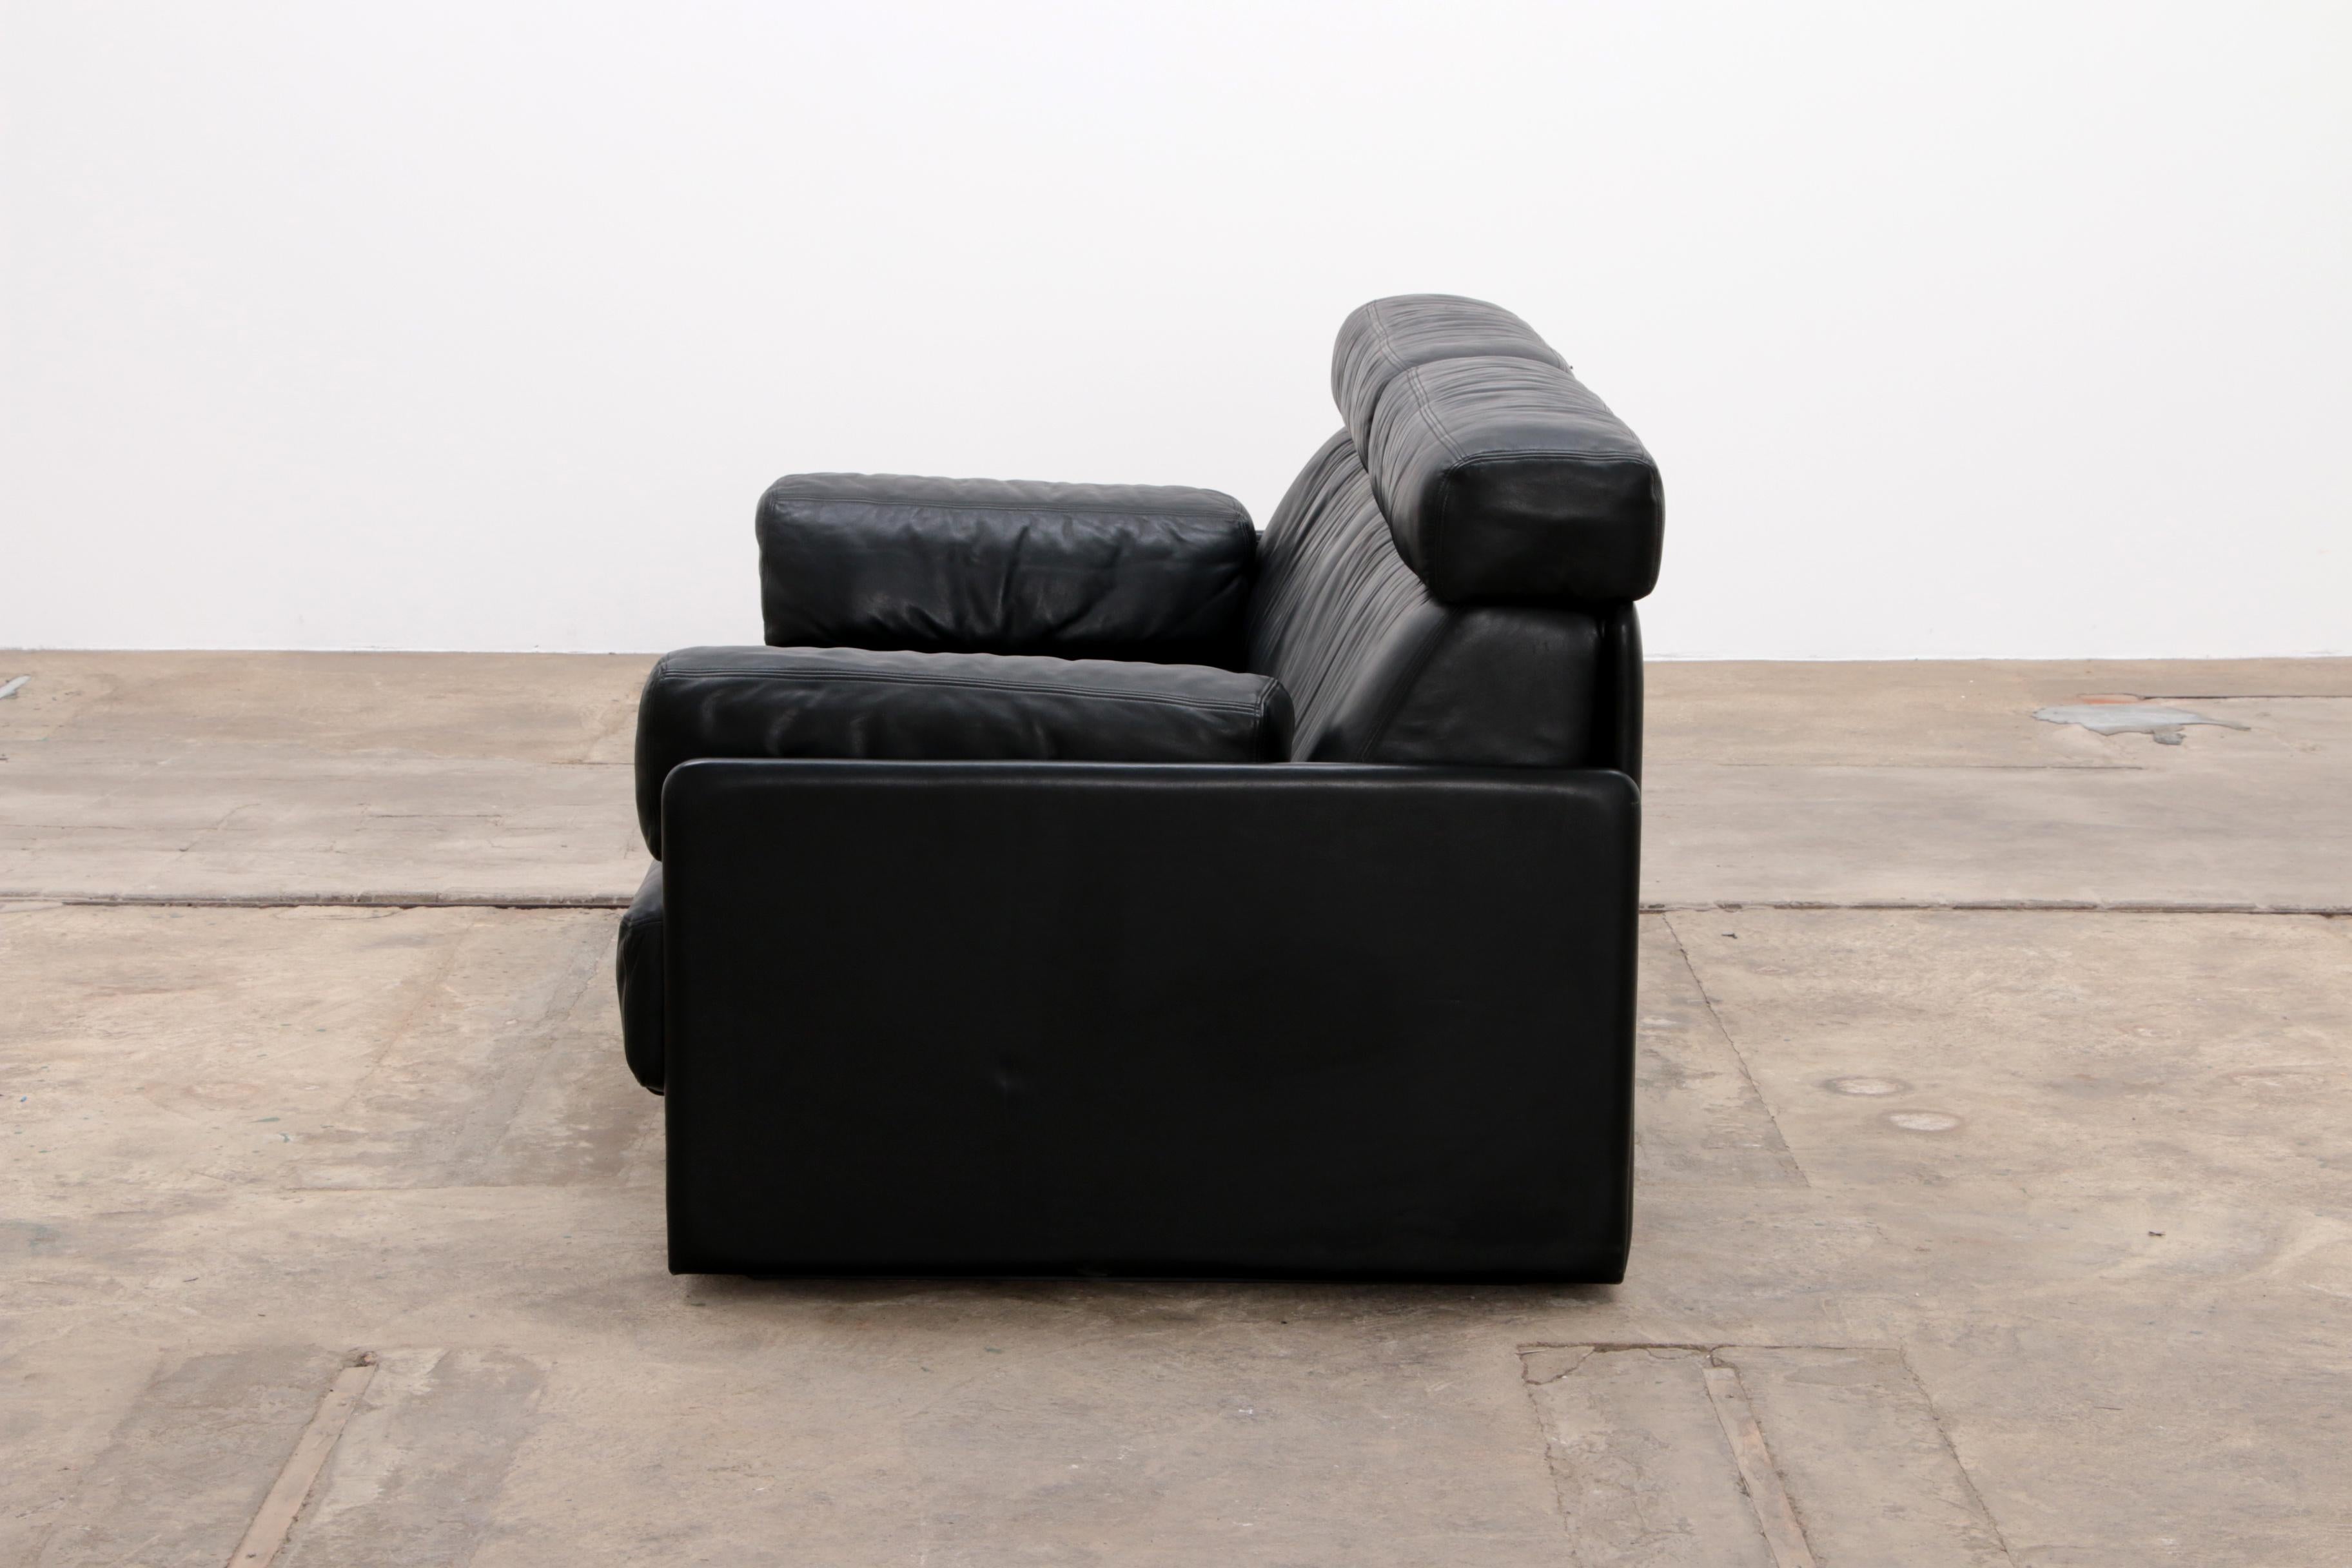 Swiss De Sede DS76 Sofa Bed in Black Upholstery by De Sede Design Team